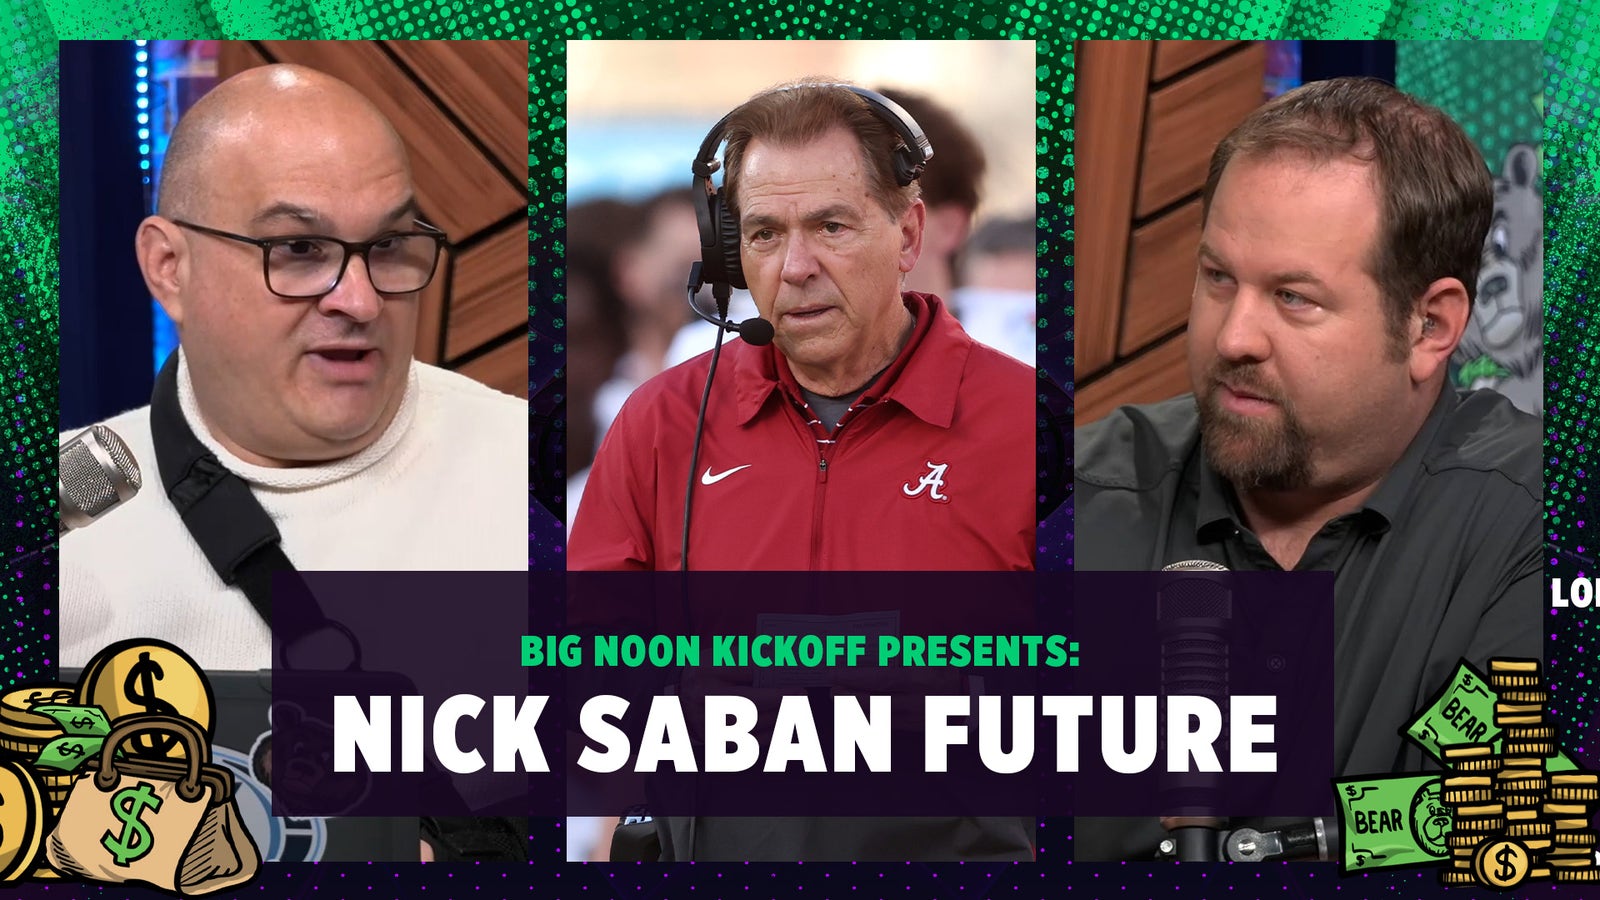 Who replaces Nick Saban at Alabama?